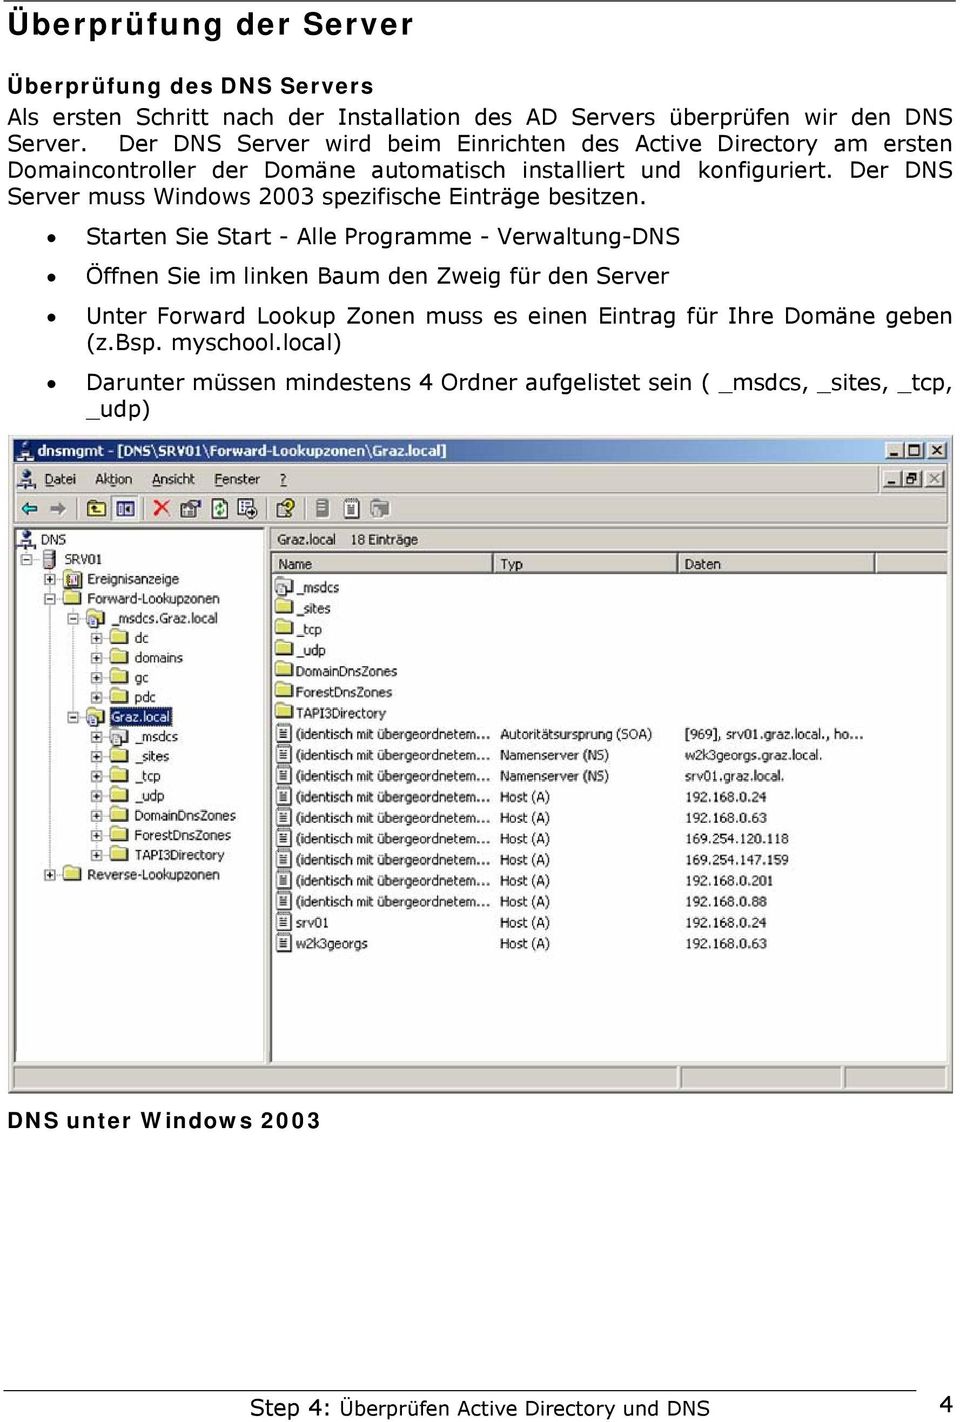 Der DNS Server muss Windows 2003 spezifische Einträge besitzen.